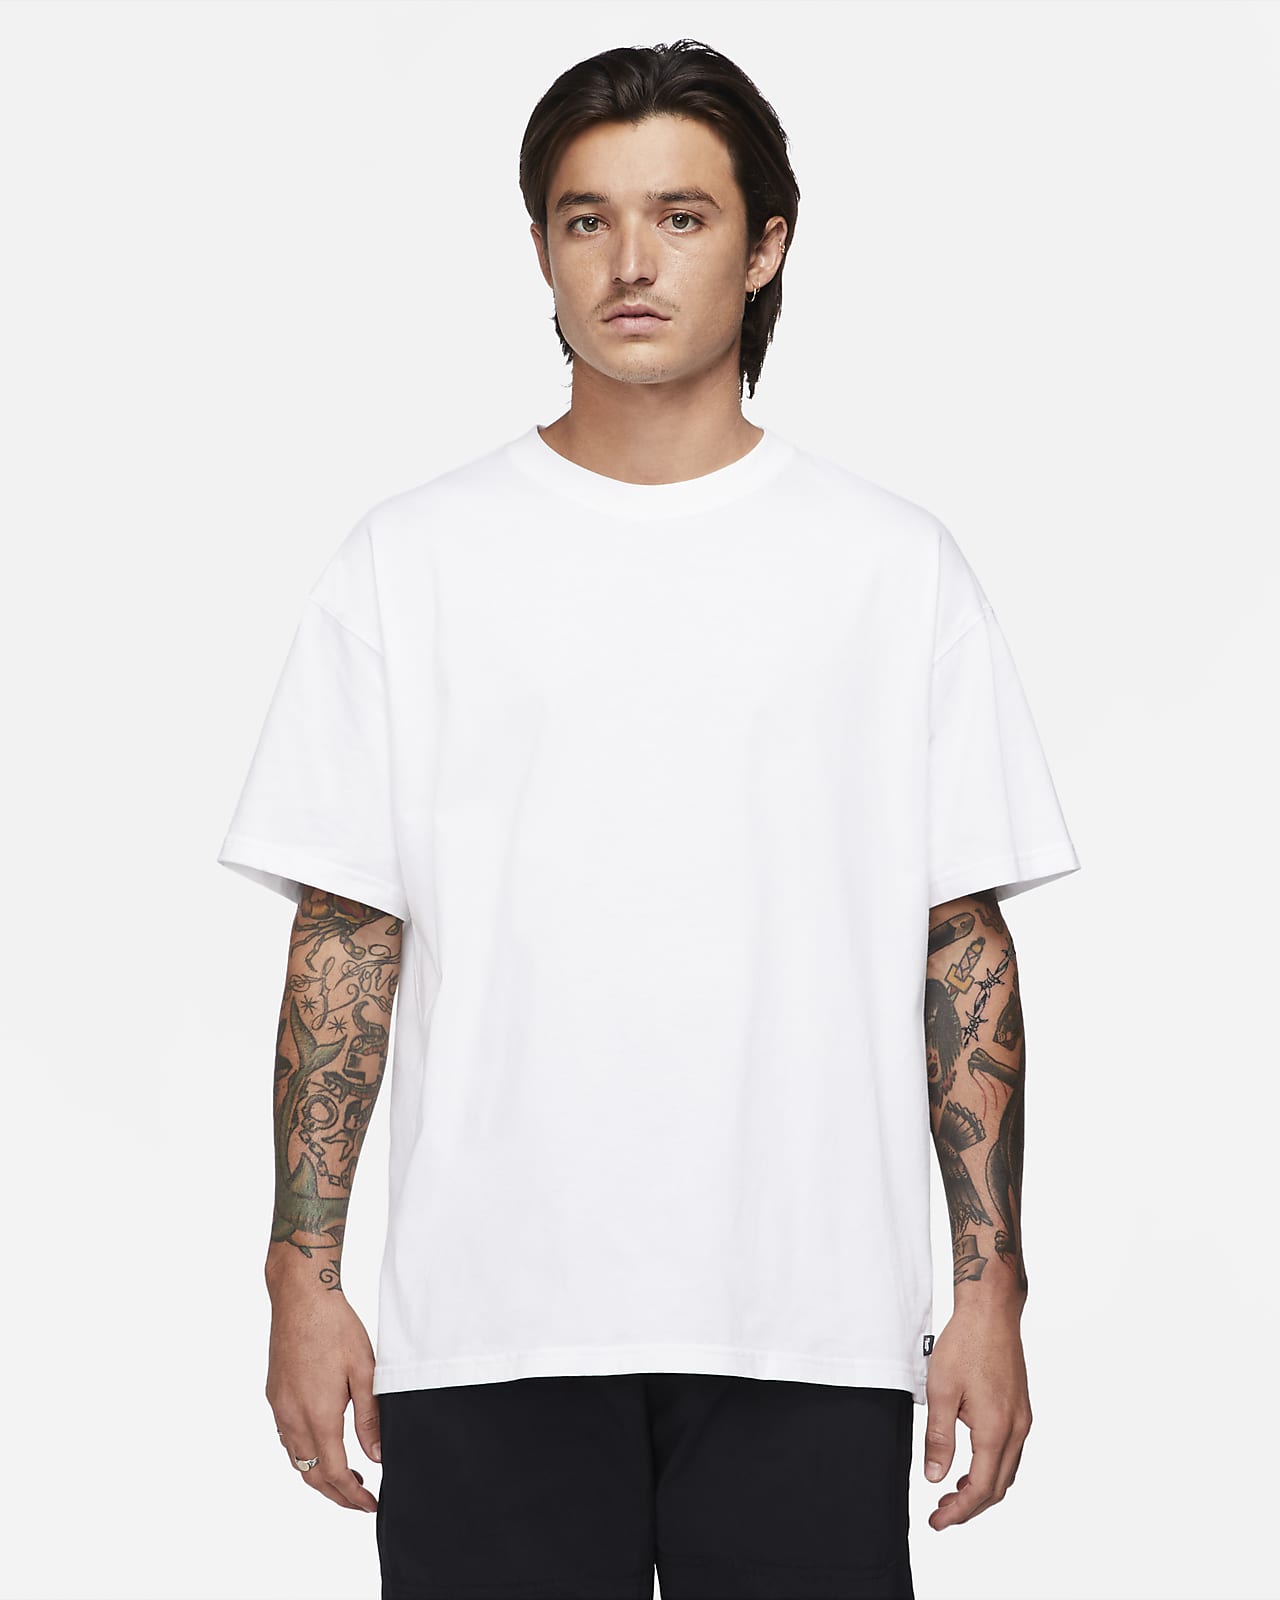 T-shirt do skateboardingu Nike SB